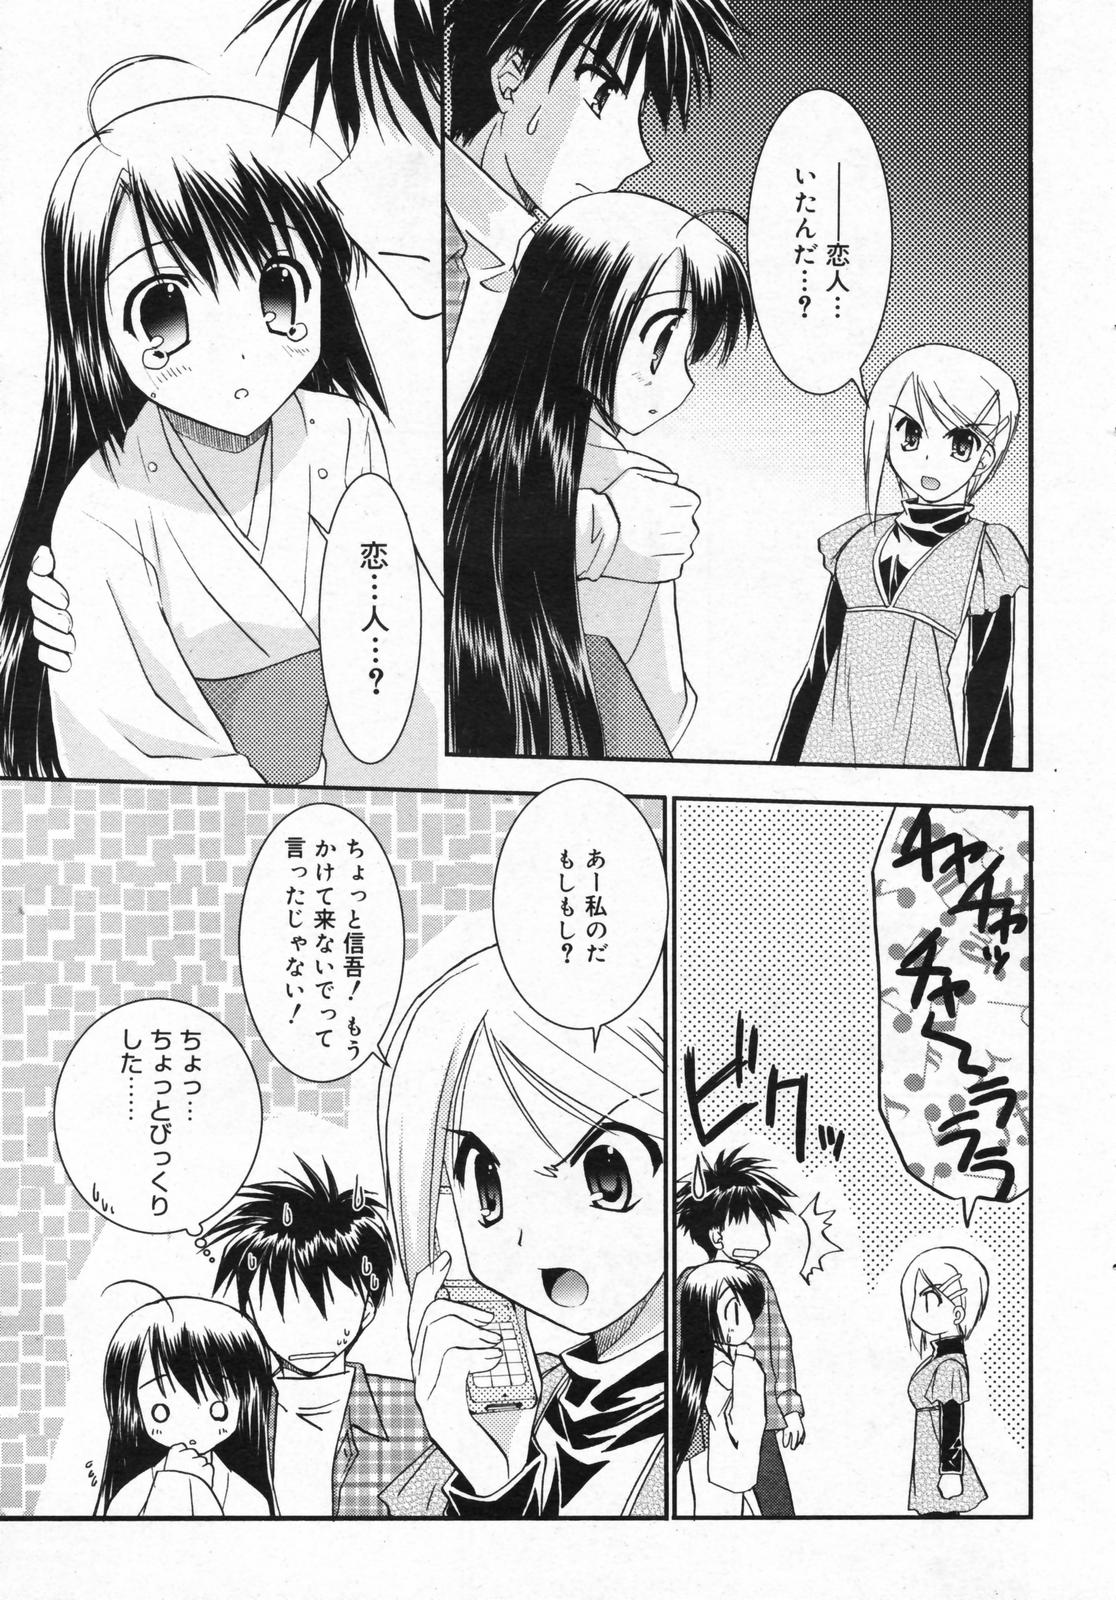 Manga Bangaichi 2008-01 page 47 full